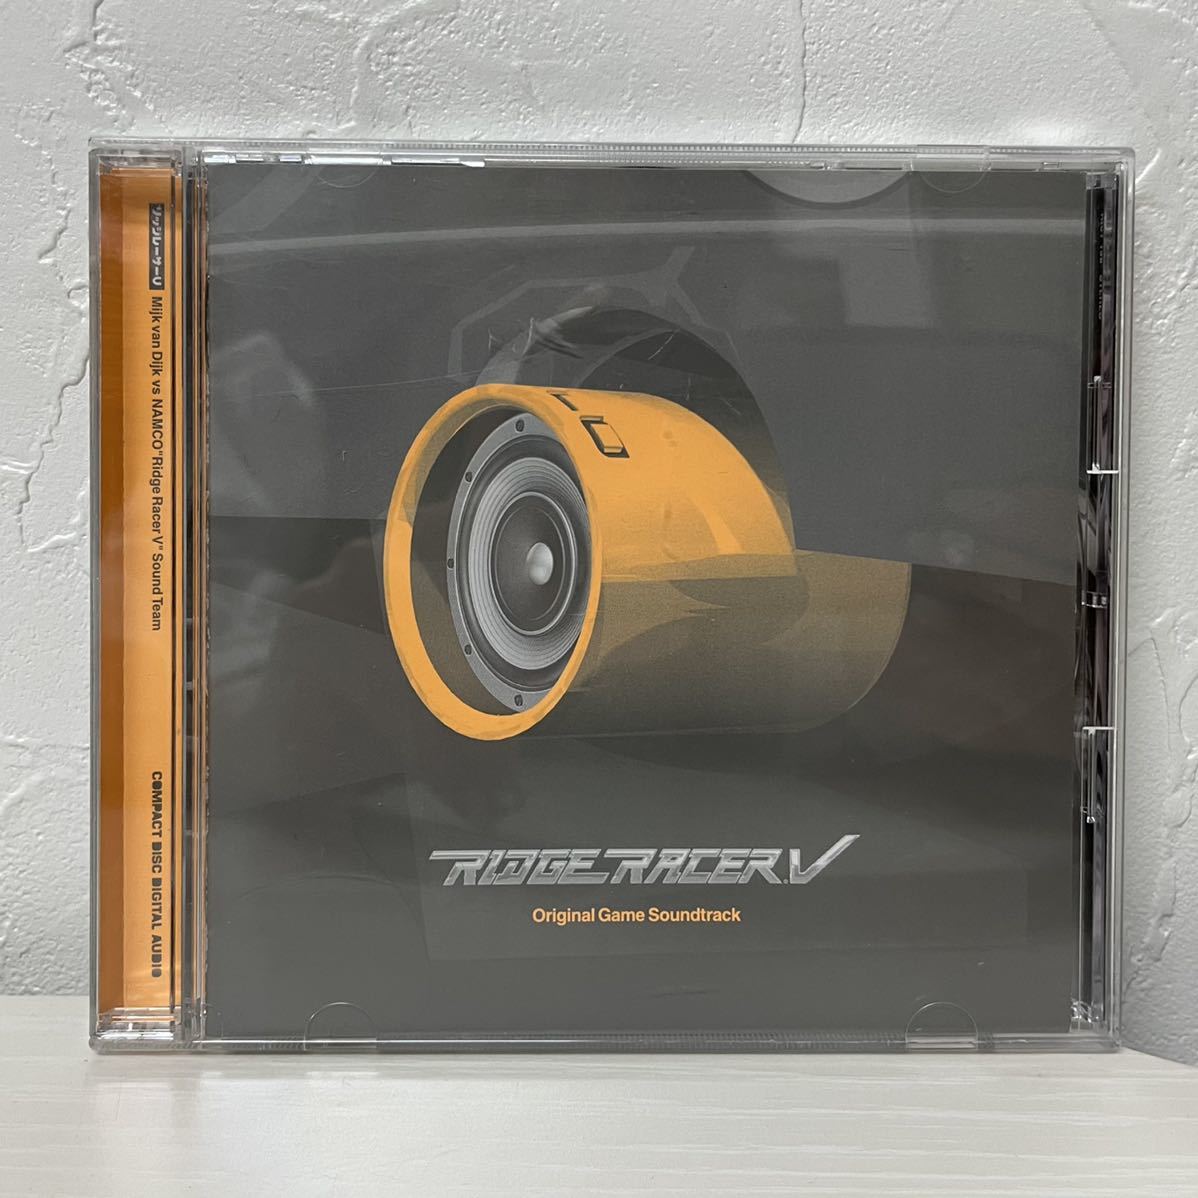 永久無料保証 Ridge Racer V Original Game Soundtrack【CD】リッジレーサー サウンドトラック  少数限定生産|音楽,CD - JP